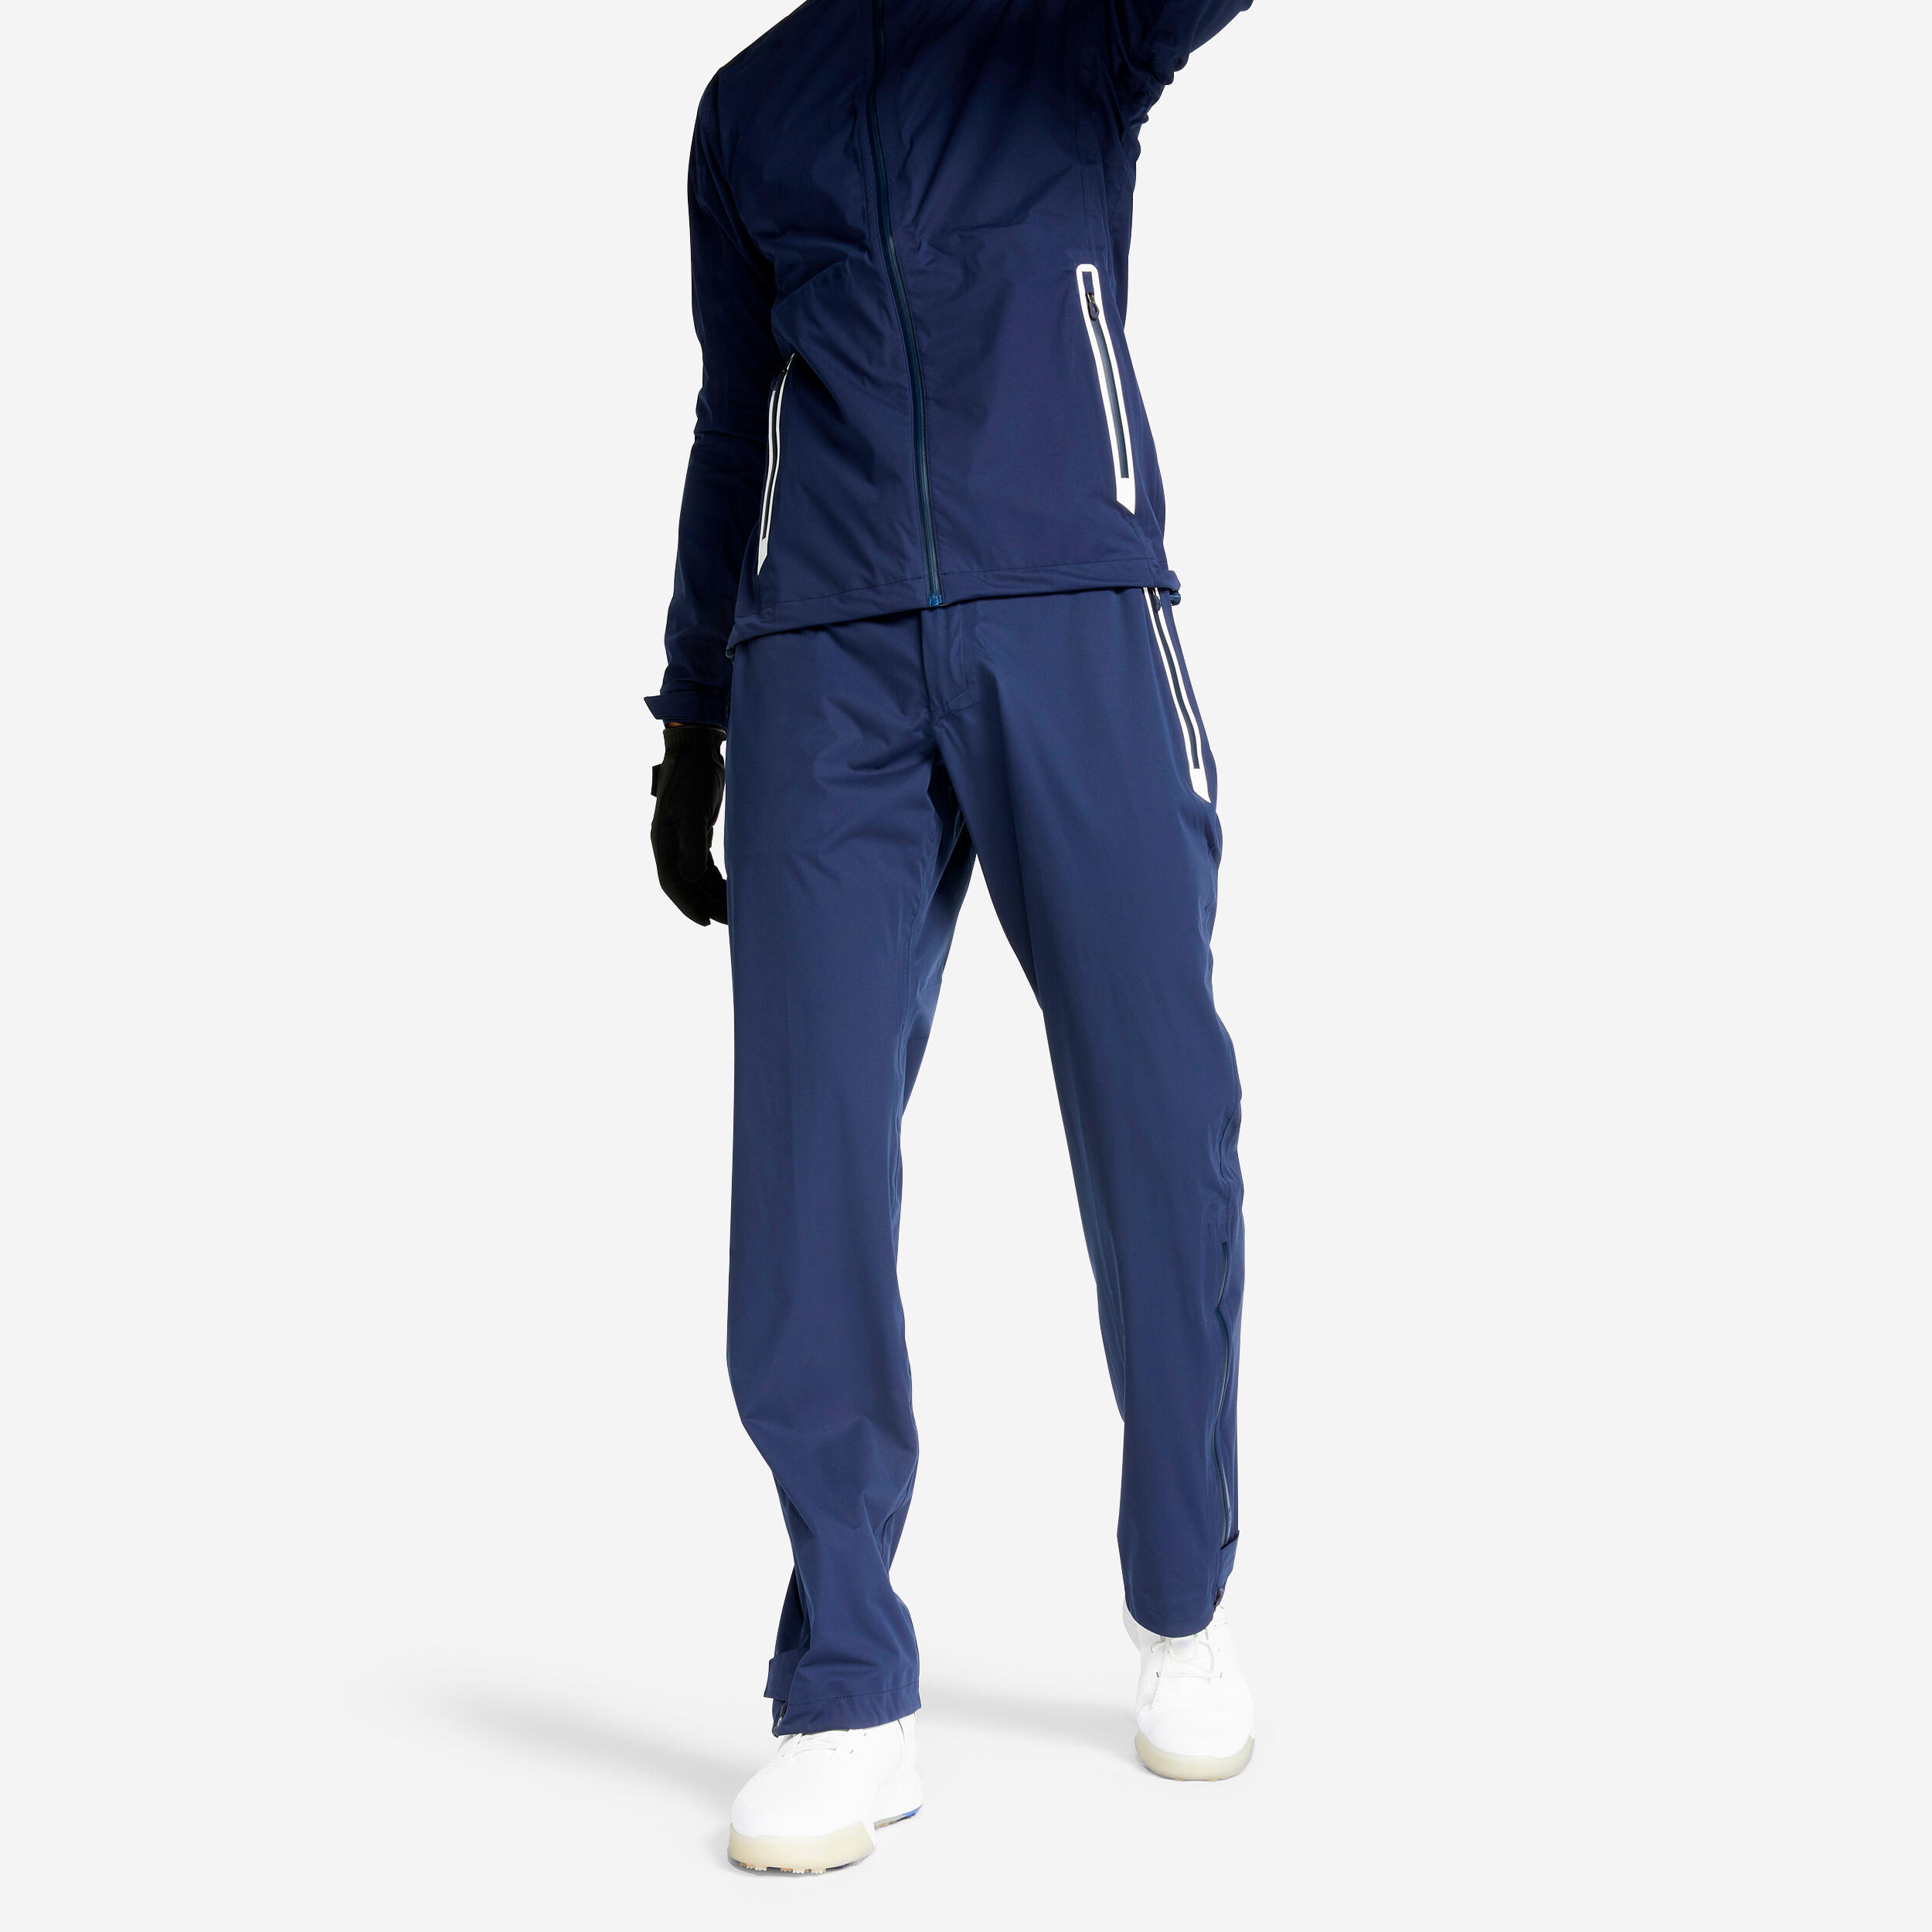 Inesis Men's Golf Waterproof Rain Trousers - Rw500 Navy Blue